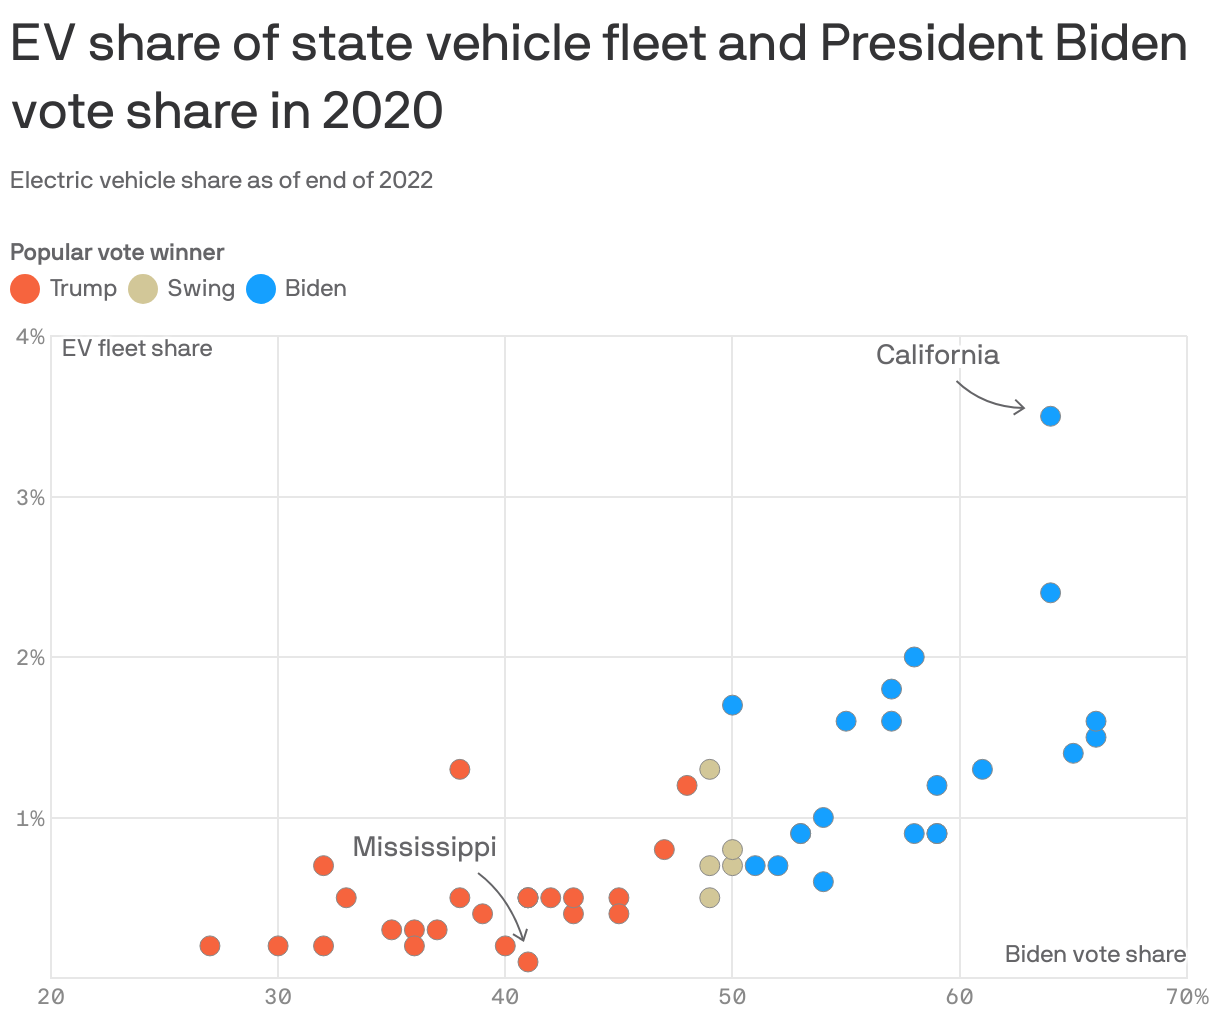 EV share of state vehicle fleet vs President Biden vote share in 2020